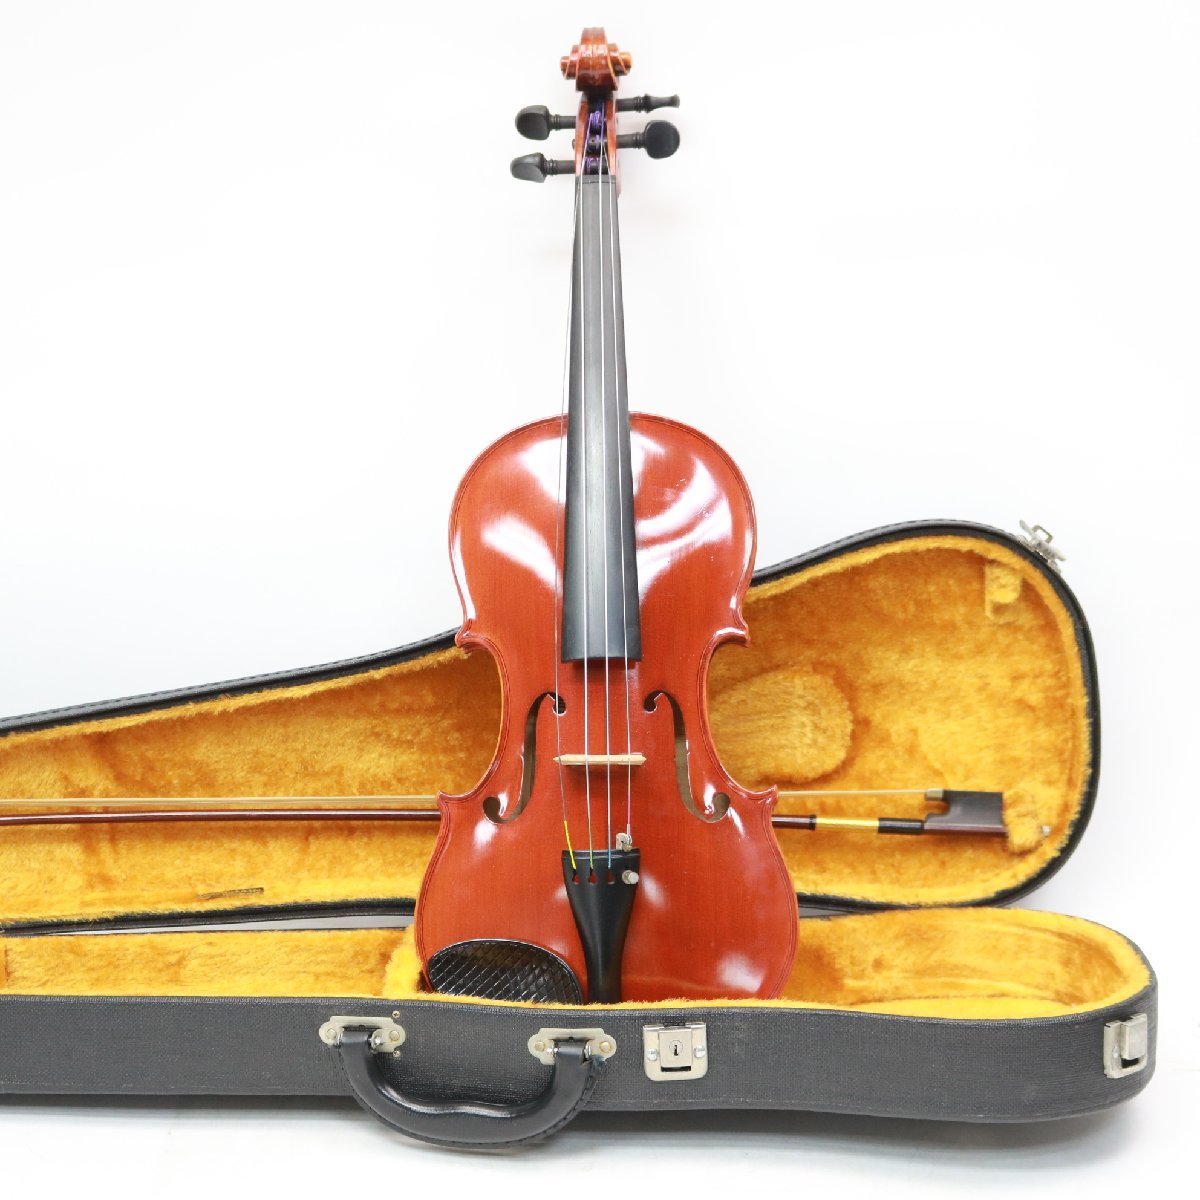 東京都品川区にて SUZUKI スズキ バイオリン No500 4/4 Anno1982 Antonius Stradivarus1720  を出張買取させて頂きました。